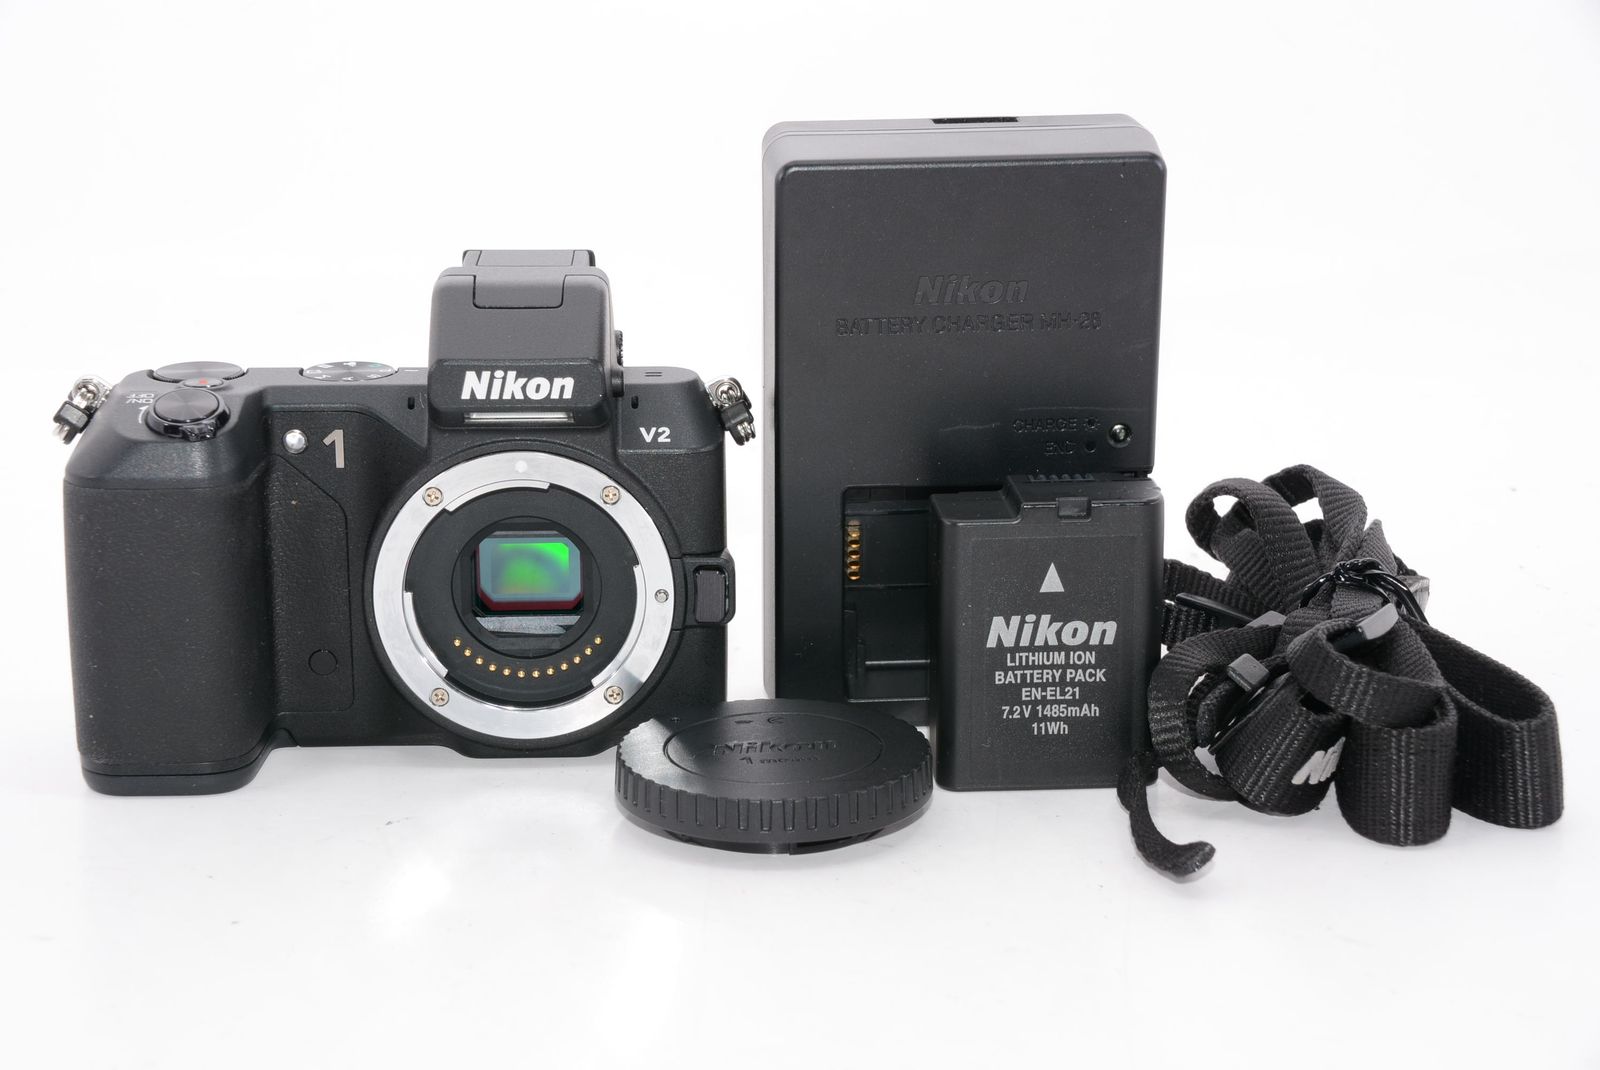 Nikon ミラーレス一眼 Nikon 1 V2 ボディー ブラック - メルカリ